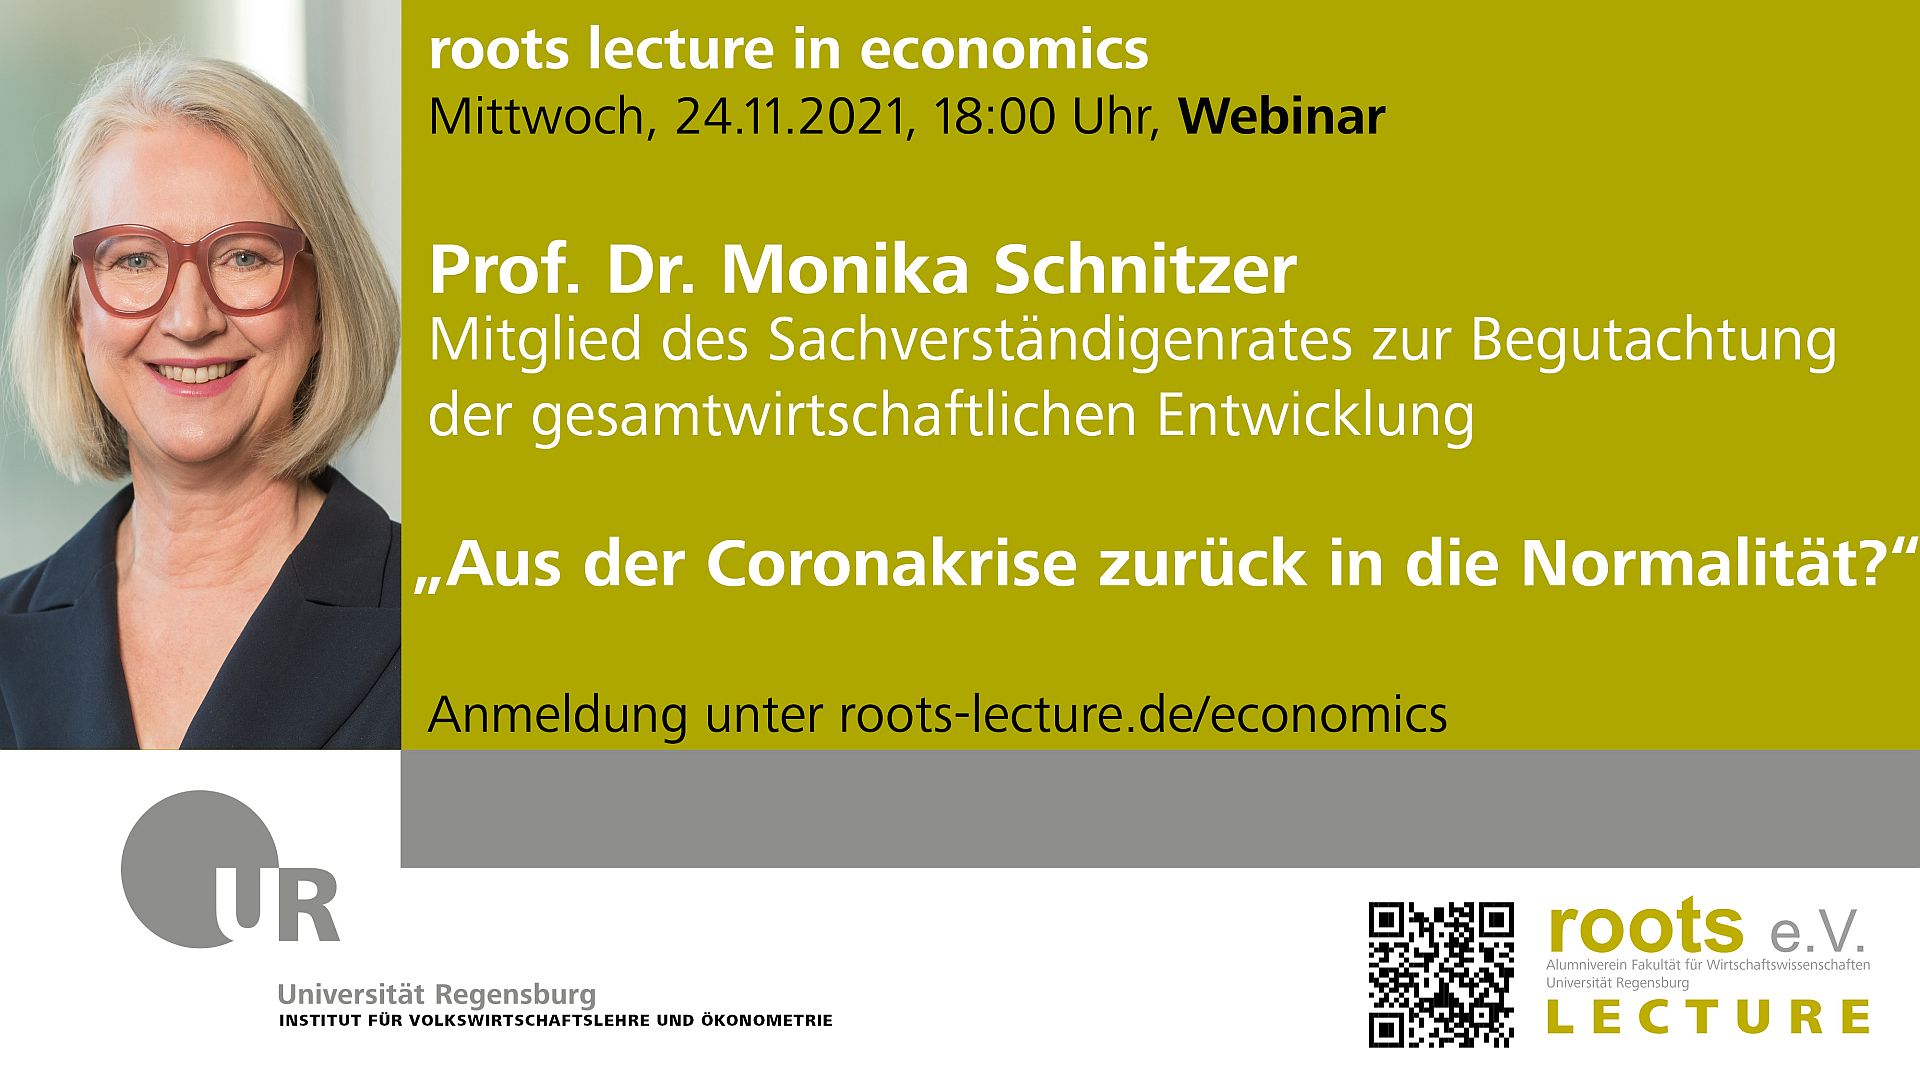 12th roots lecture in economics am Mittwoch, den 24.11.2021 mit Frau Prof. Dr. Monika Schnitzer